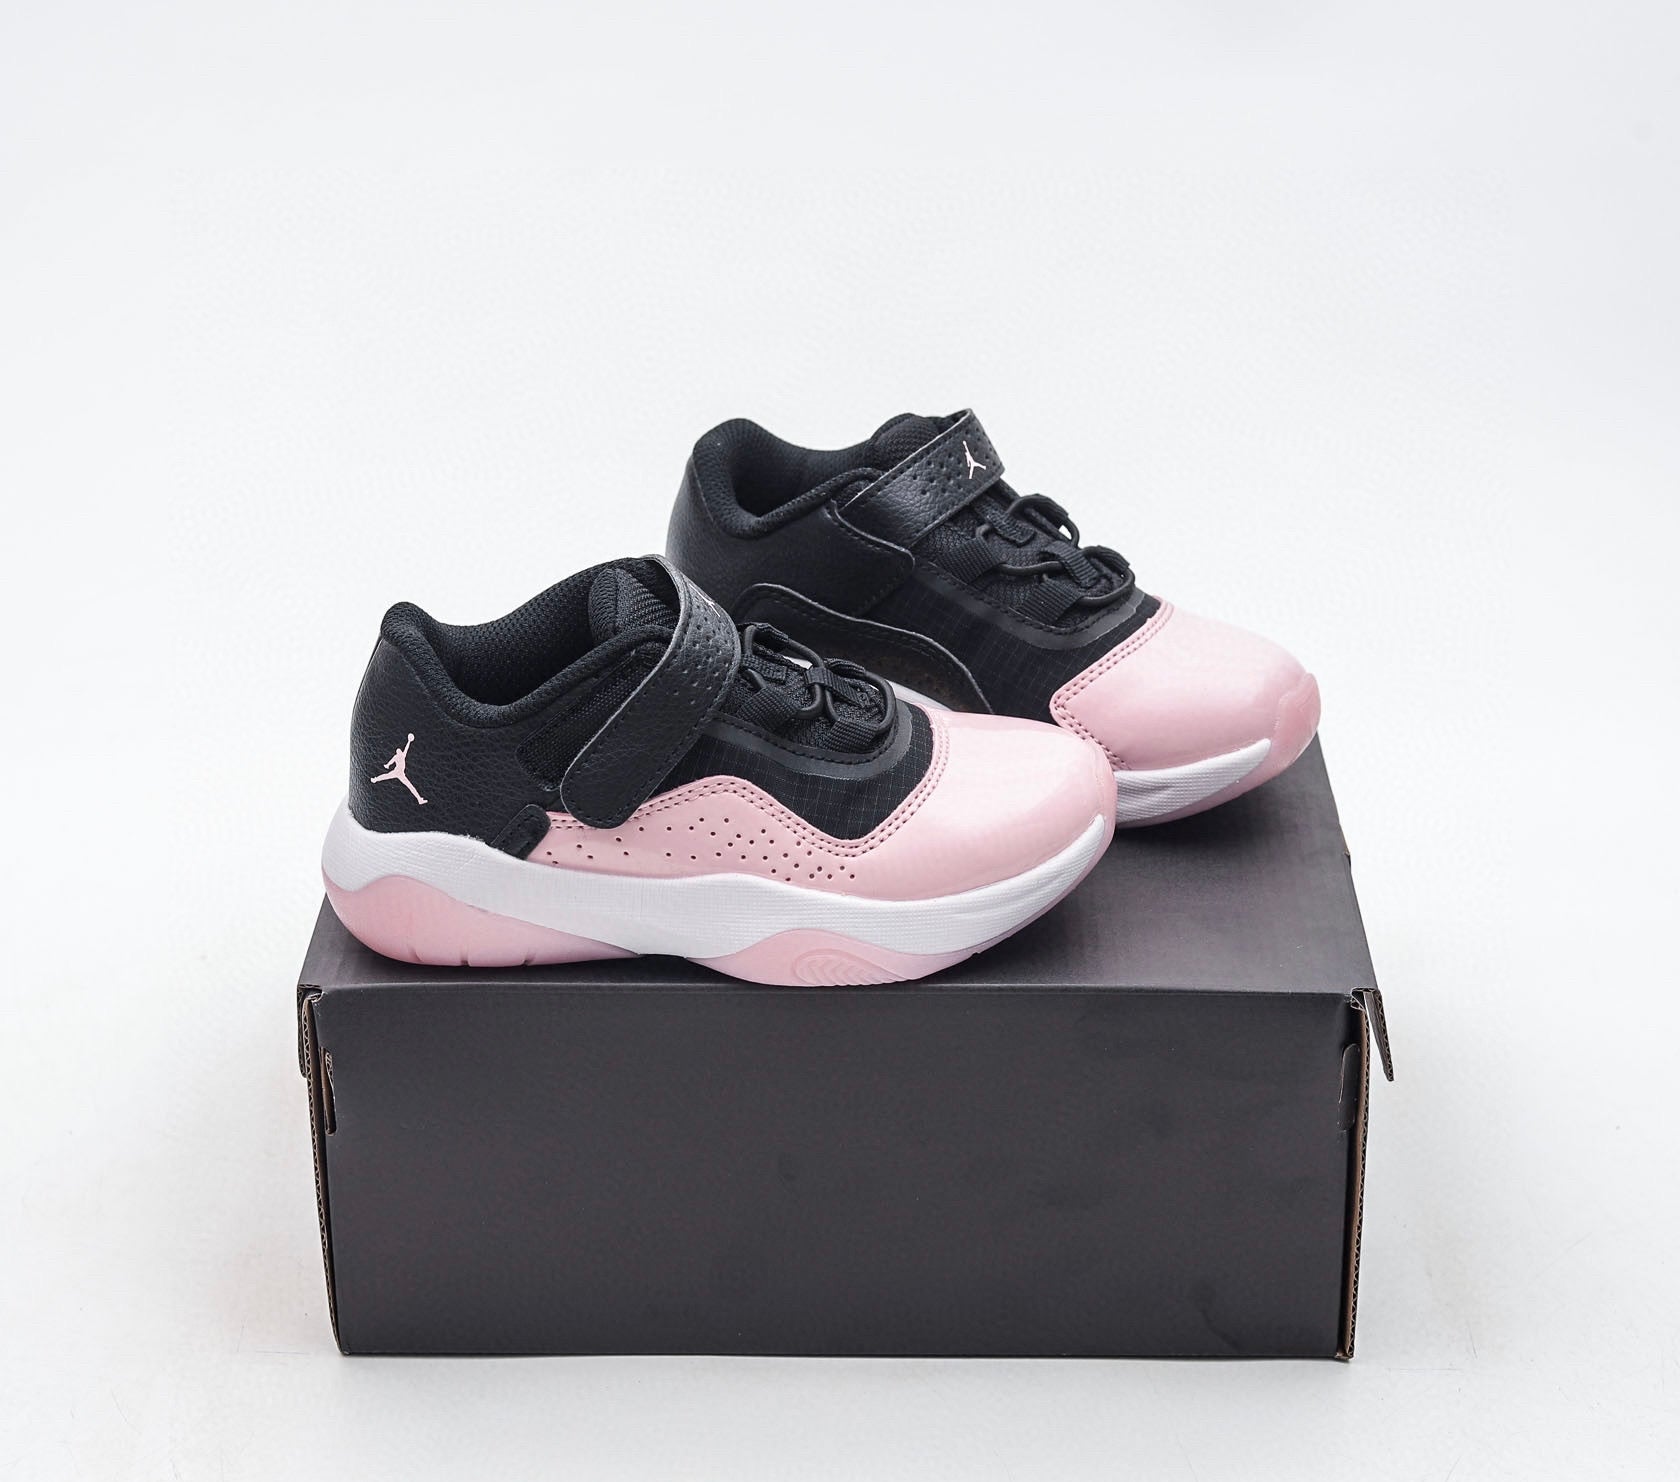 Nike air jordan retro low cut black and pink shoes